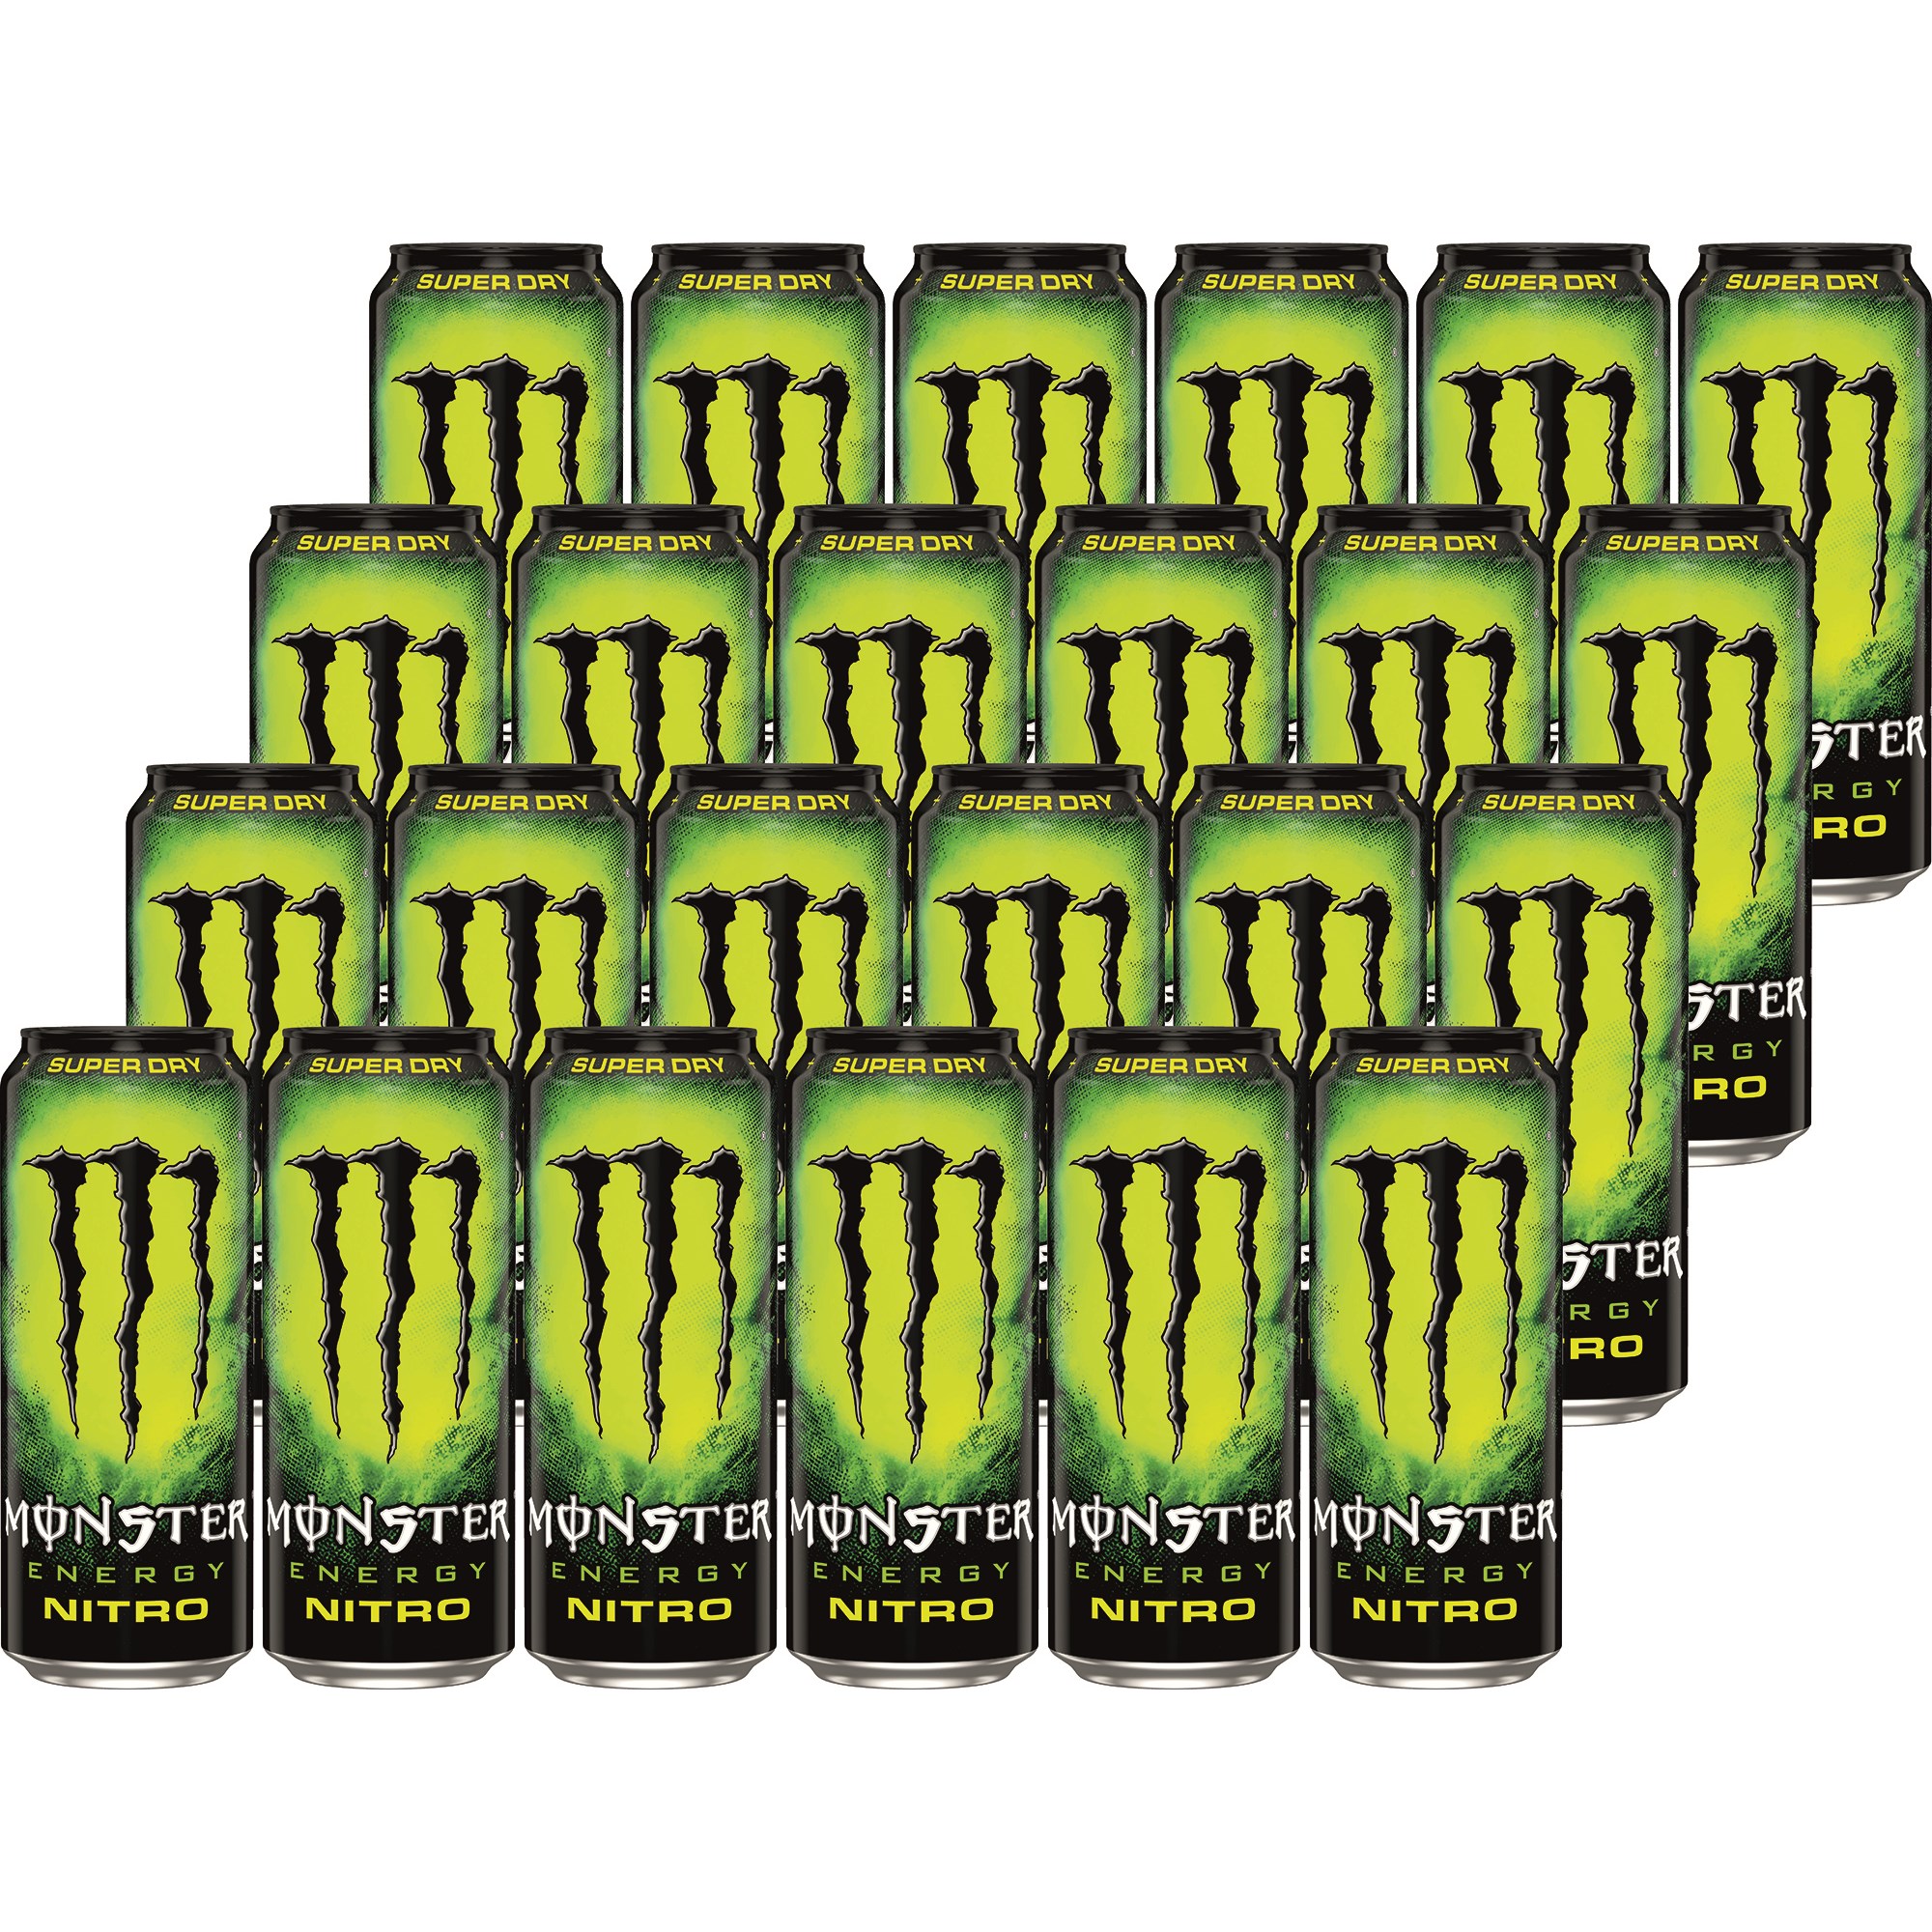 Bilde av Monster Energy Nitro Super Dry 24 X 50cl